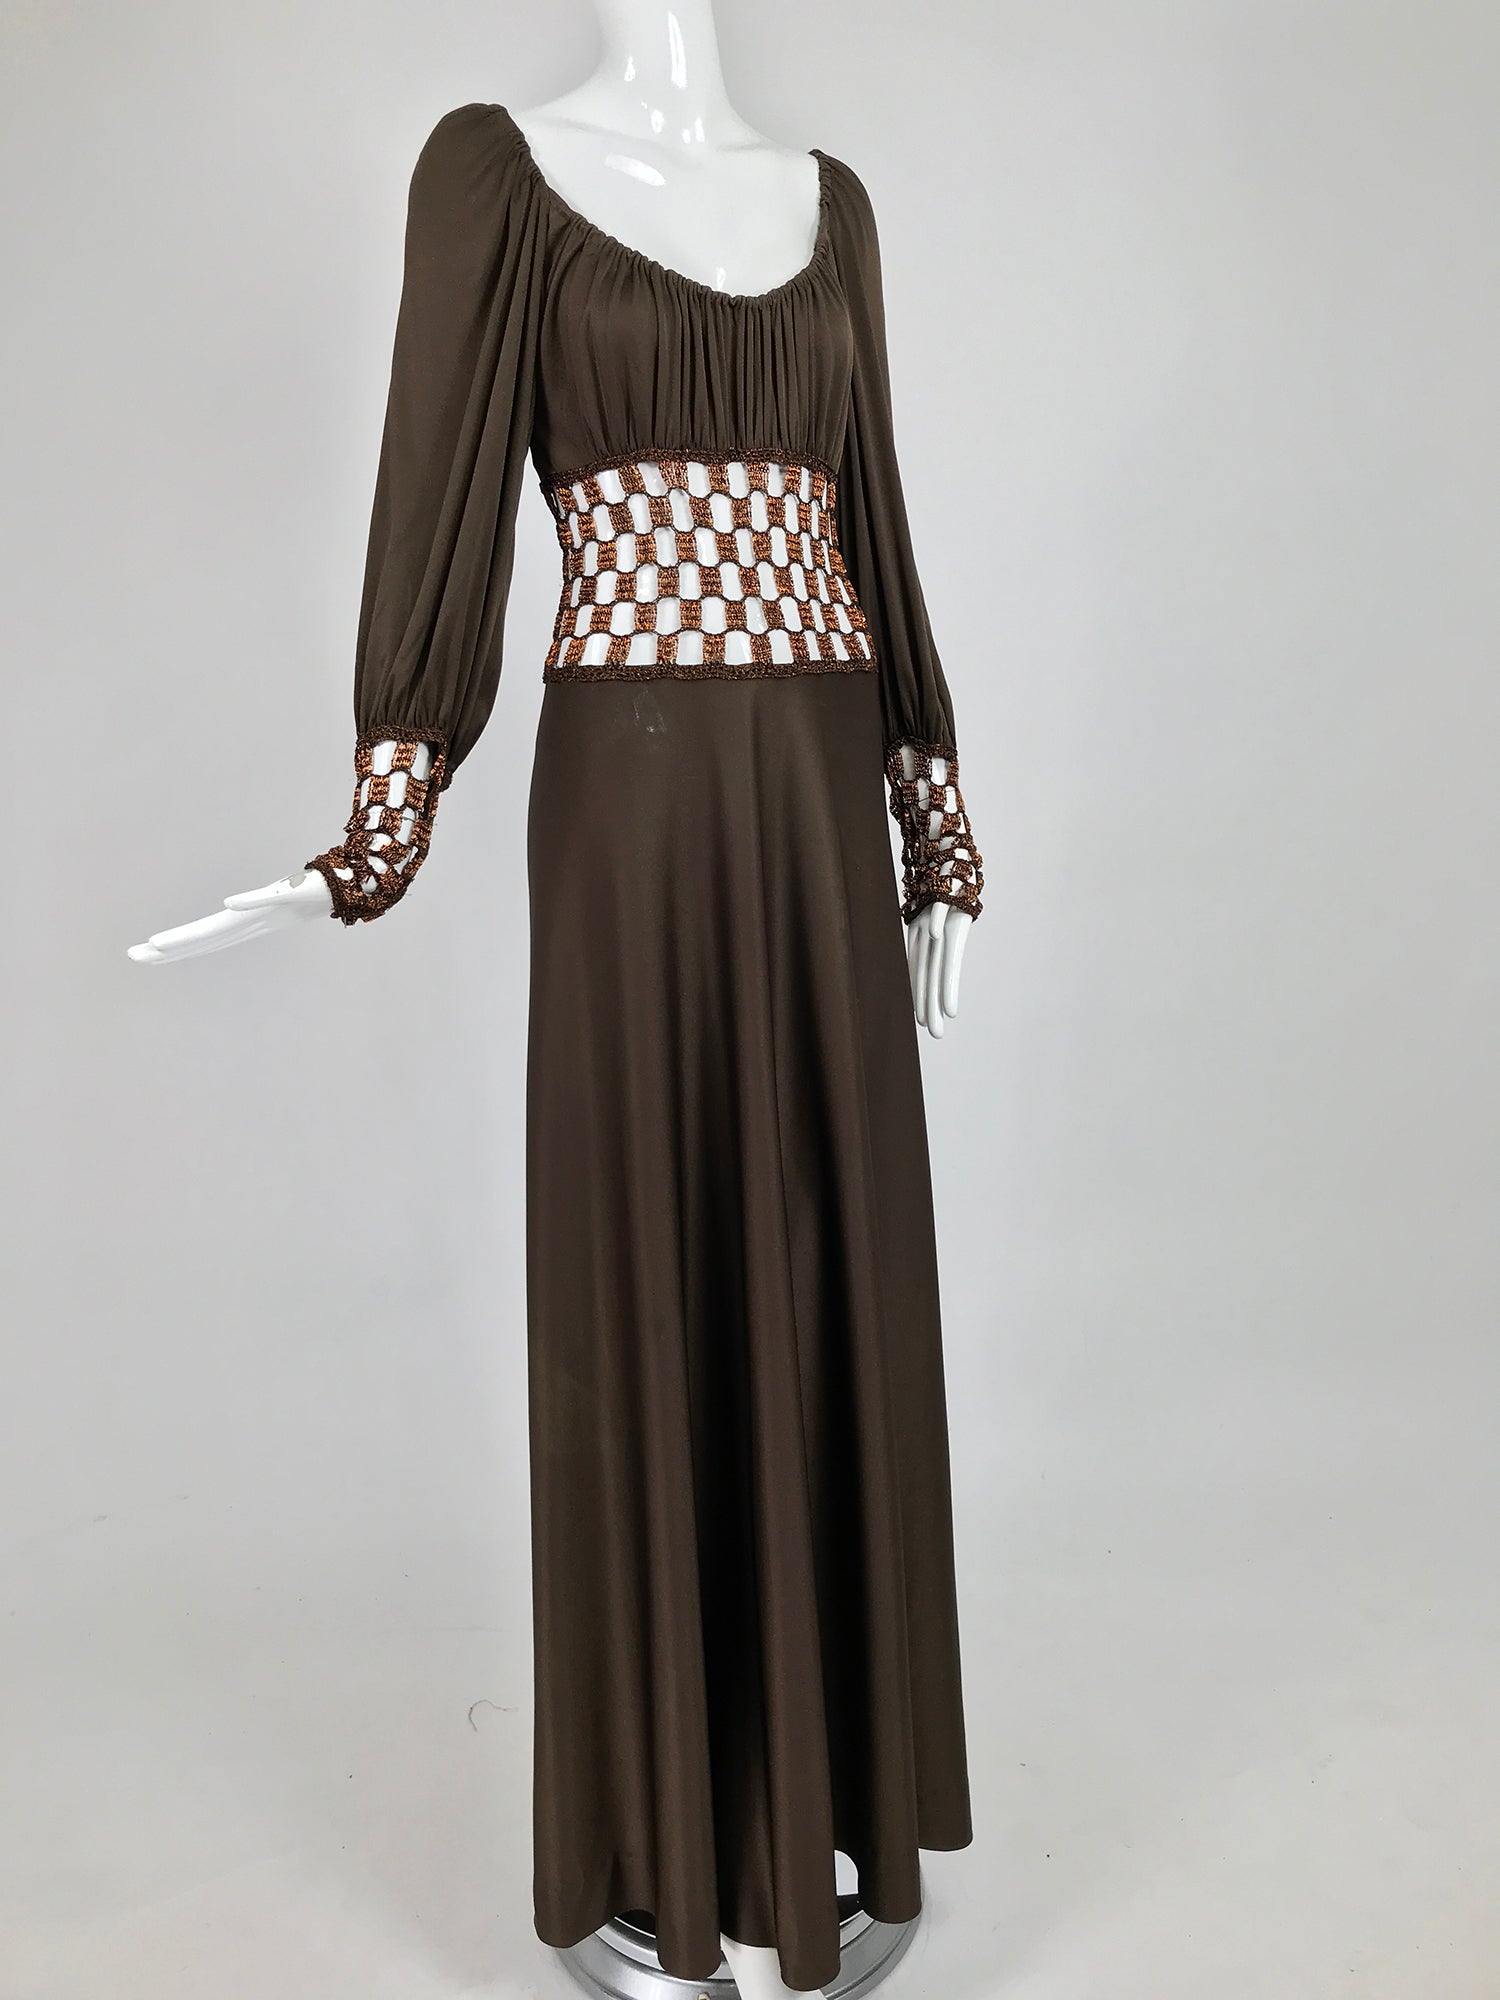 Luis Estevez Maxi Dress, Gold Metallic Gown, Bishop Sleeves, 1960s 1970s  60s 70s Gown Grecian Goddess, Metallic Lame, High Neck Floor Length 